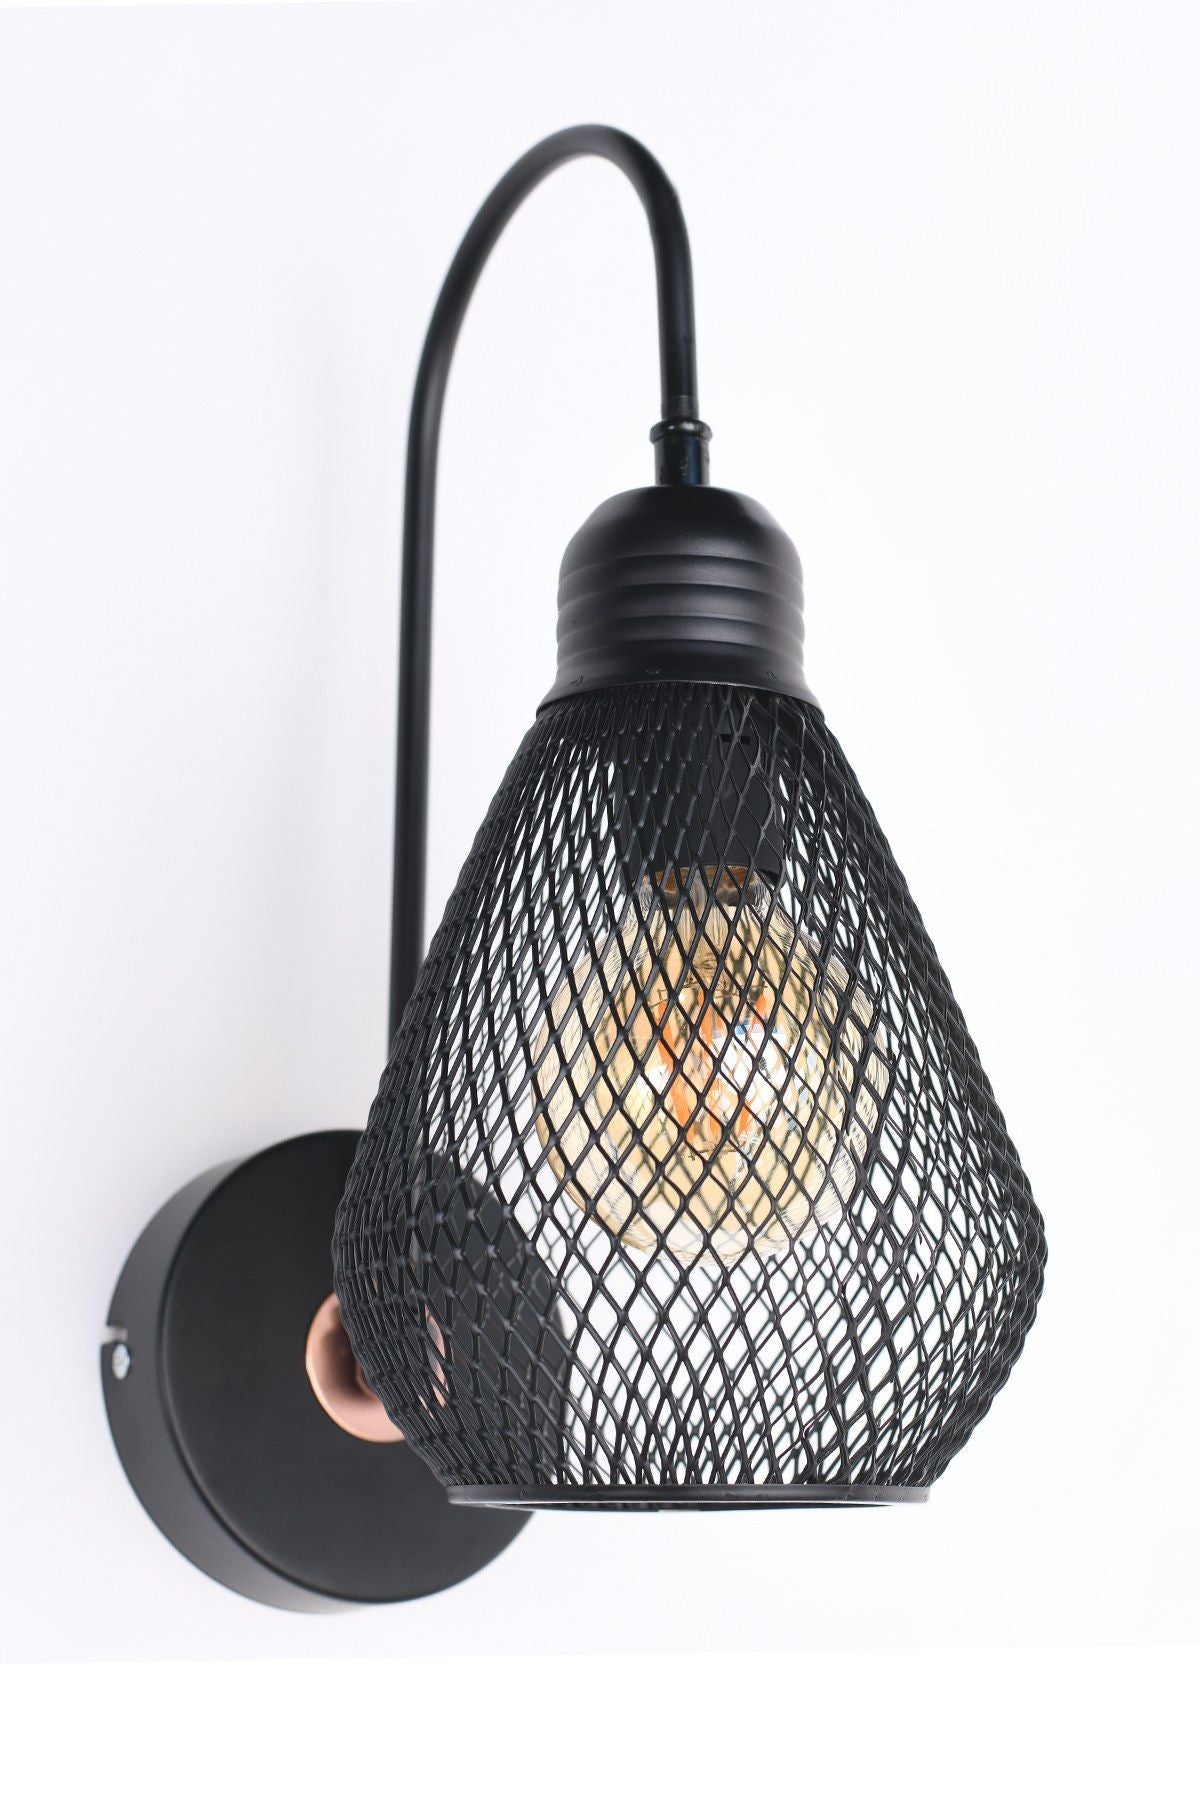 HM016 - Væglampe